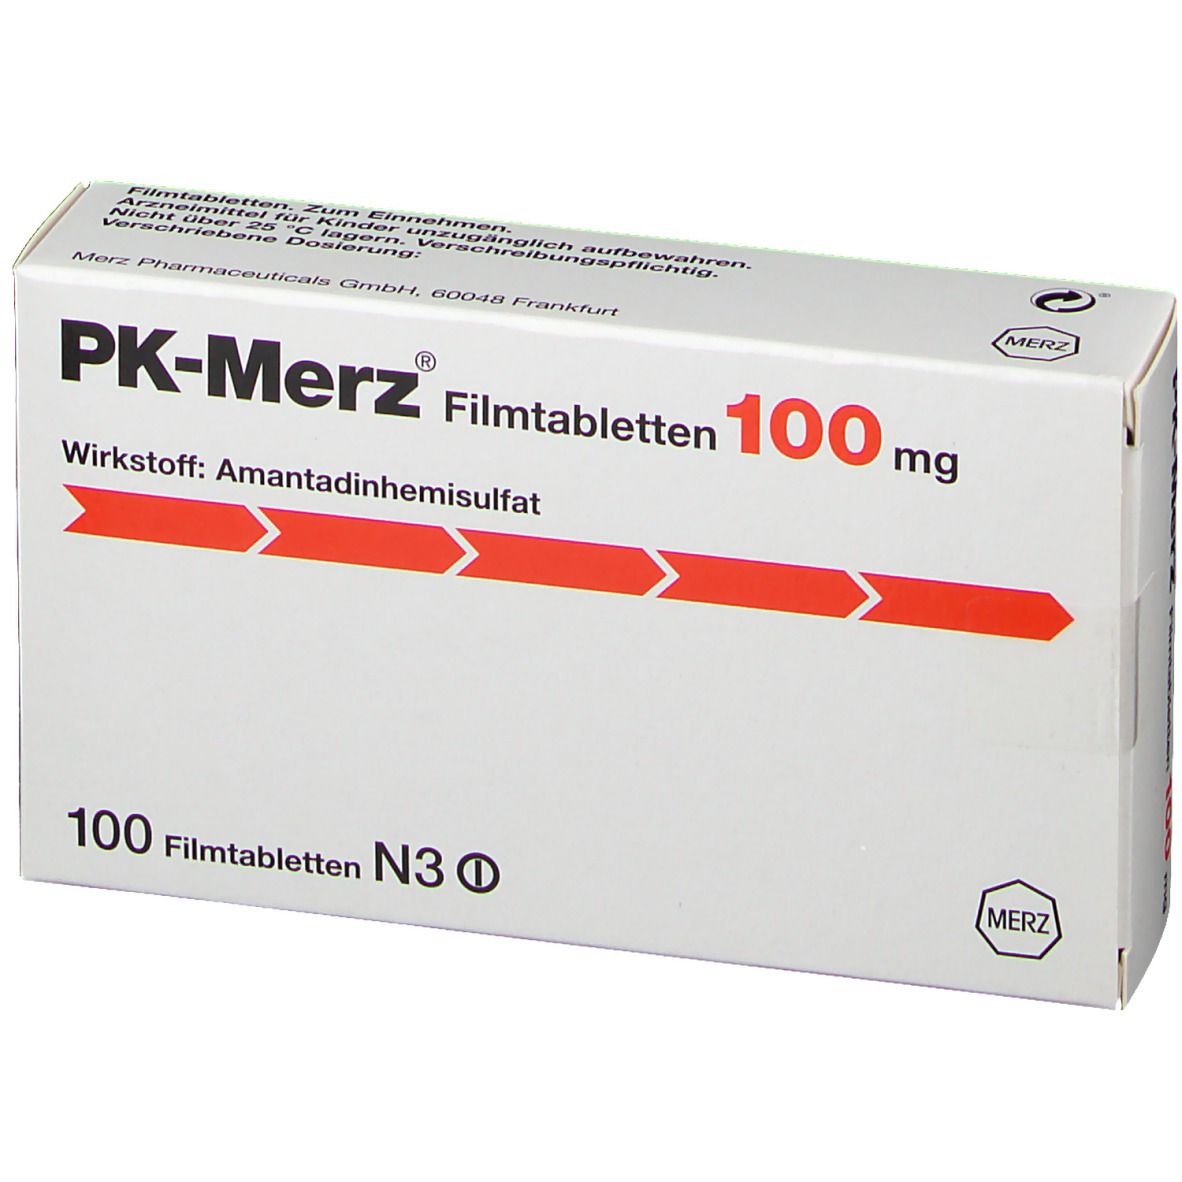 PK-Merz® 100 mg